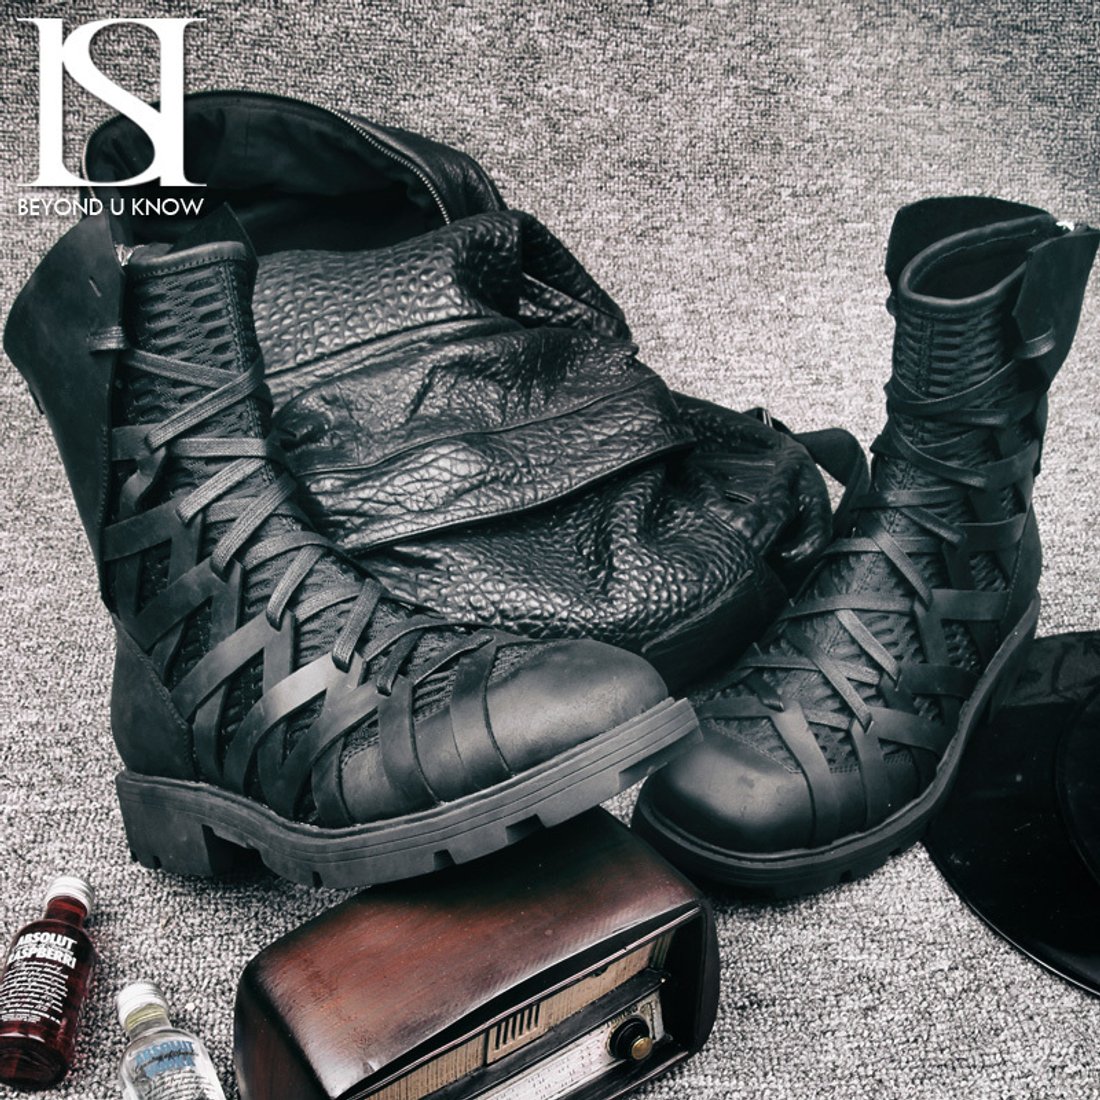 Купить Высокие мужские ботинки на шнуровке «HIMIA» в интернет магазине понедорогой цене c доставкой по Москве и РФ